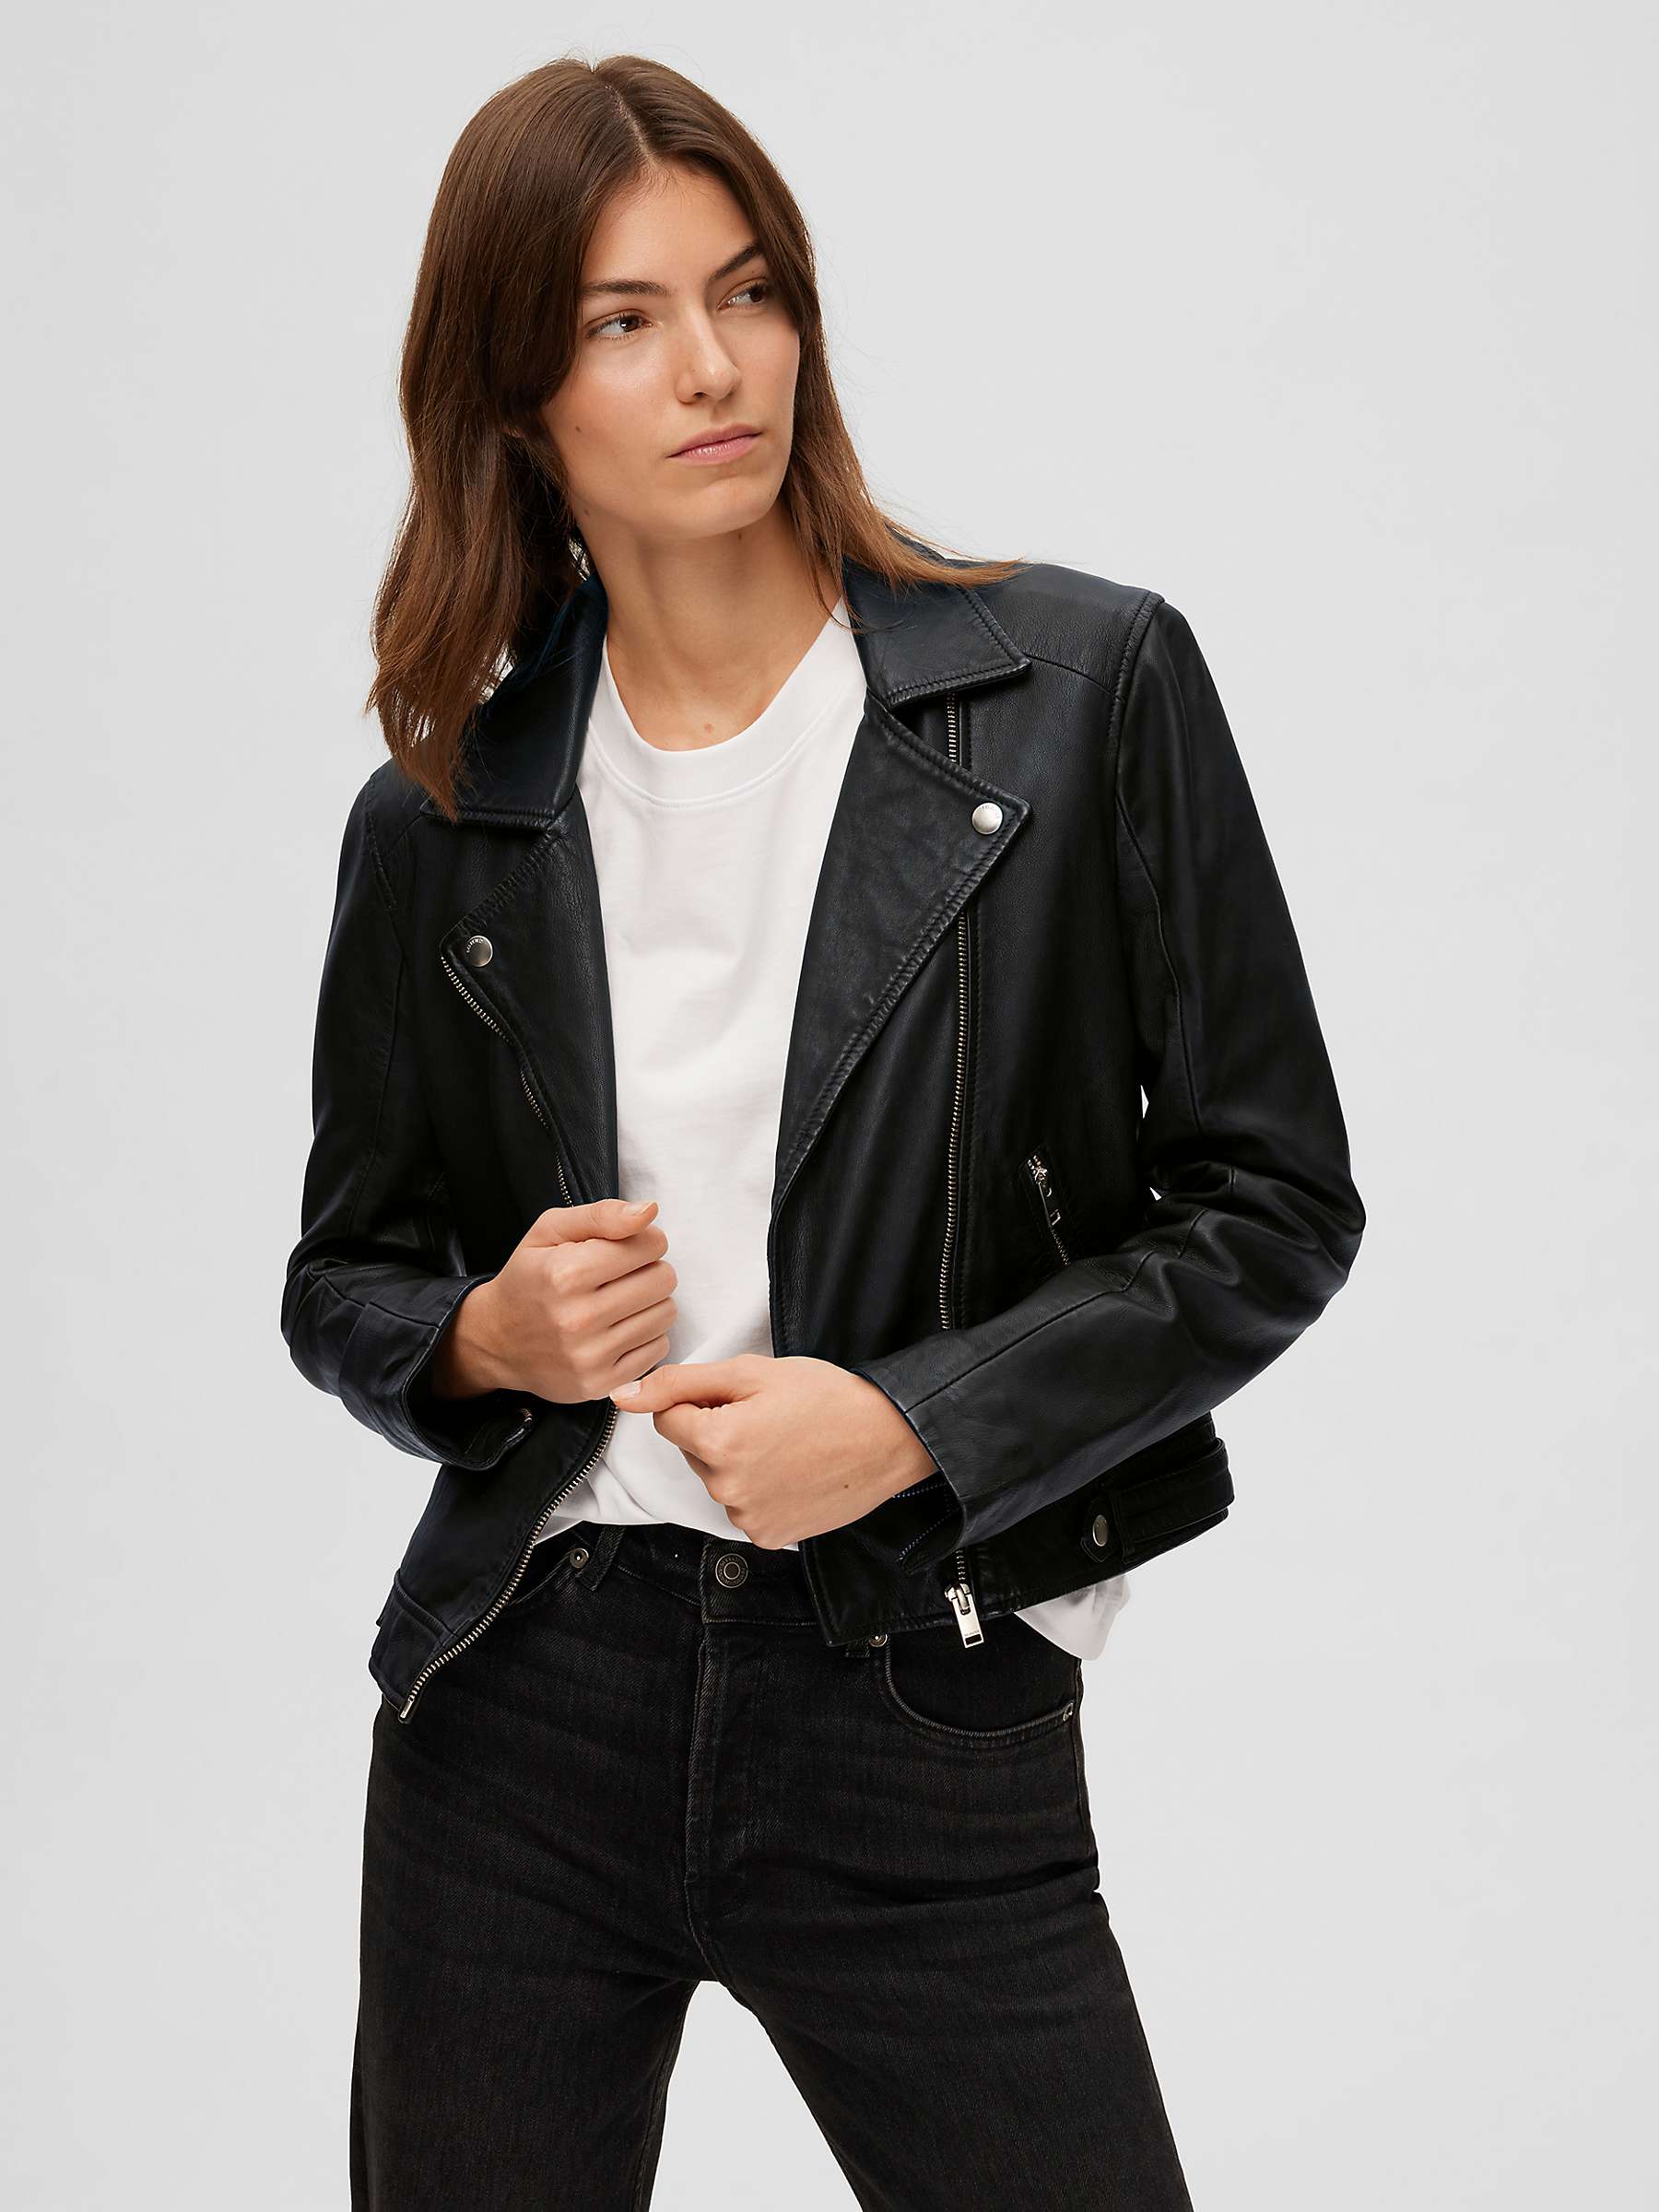 Buy SELECTED FEMME Leather Jacket, Black Online at johnlewis.com